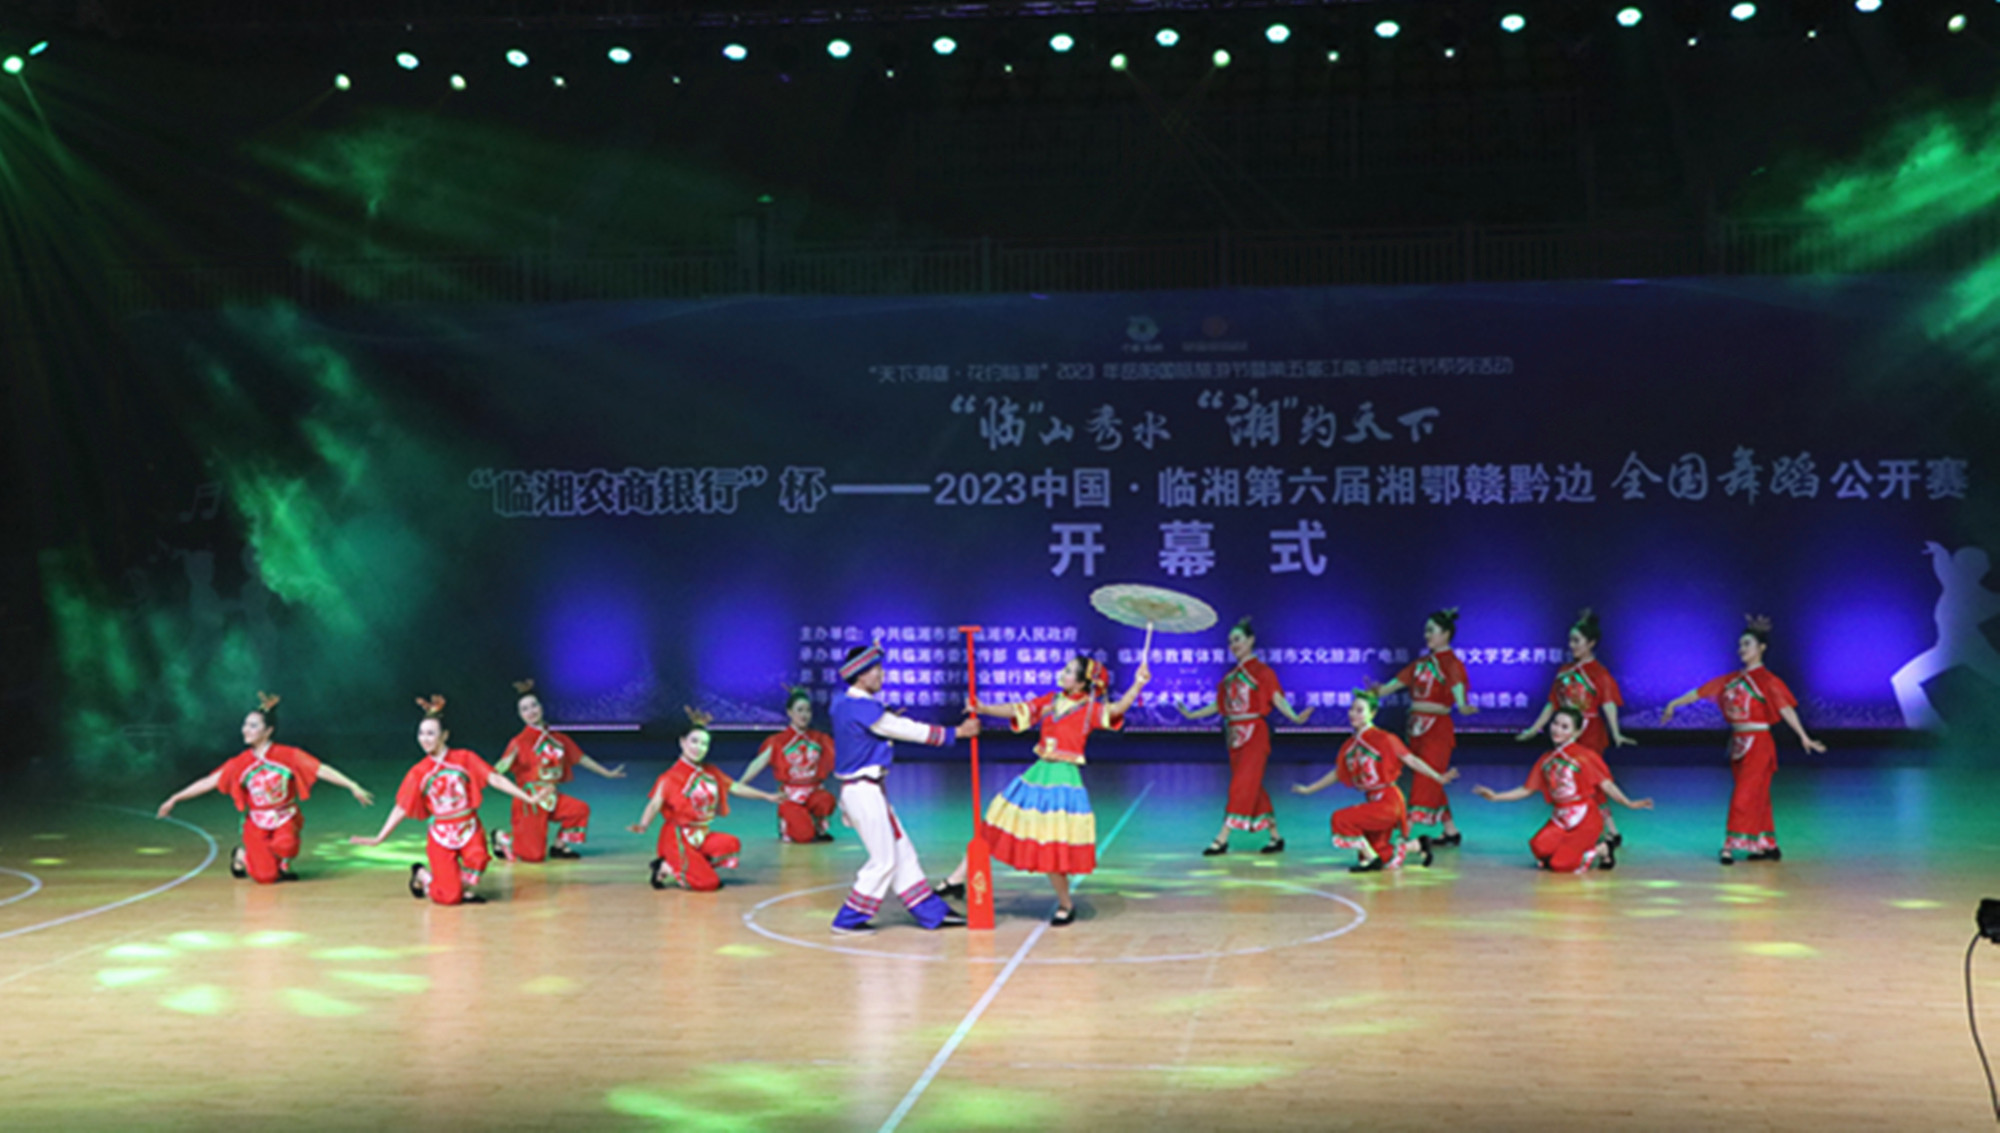 3.18书记 临湘市第六届全国舞蹈公开赛开幕式(6)_副本.jpg